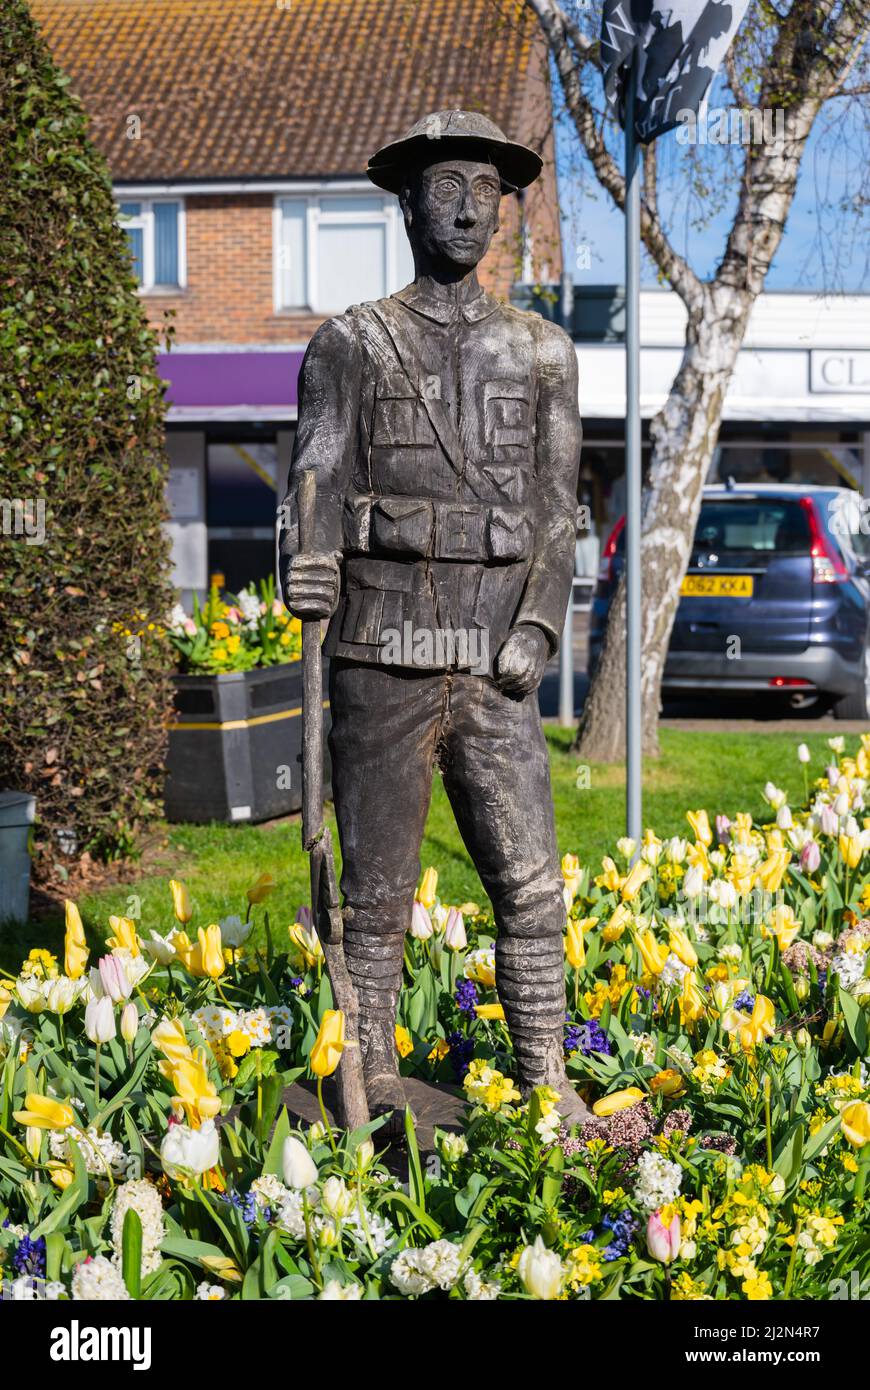 Plantation commémorative de la première Guerre mondiale de 100 ans (1) entourée de fleurs au printemps à Rustington, West Sussex, Angleterre, Royaume-Uni. Banque D'Images